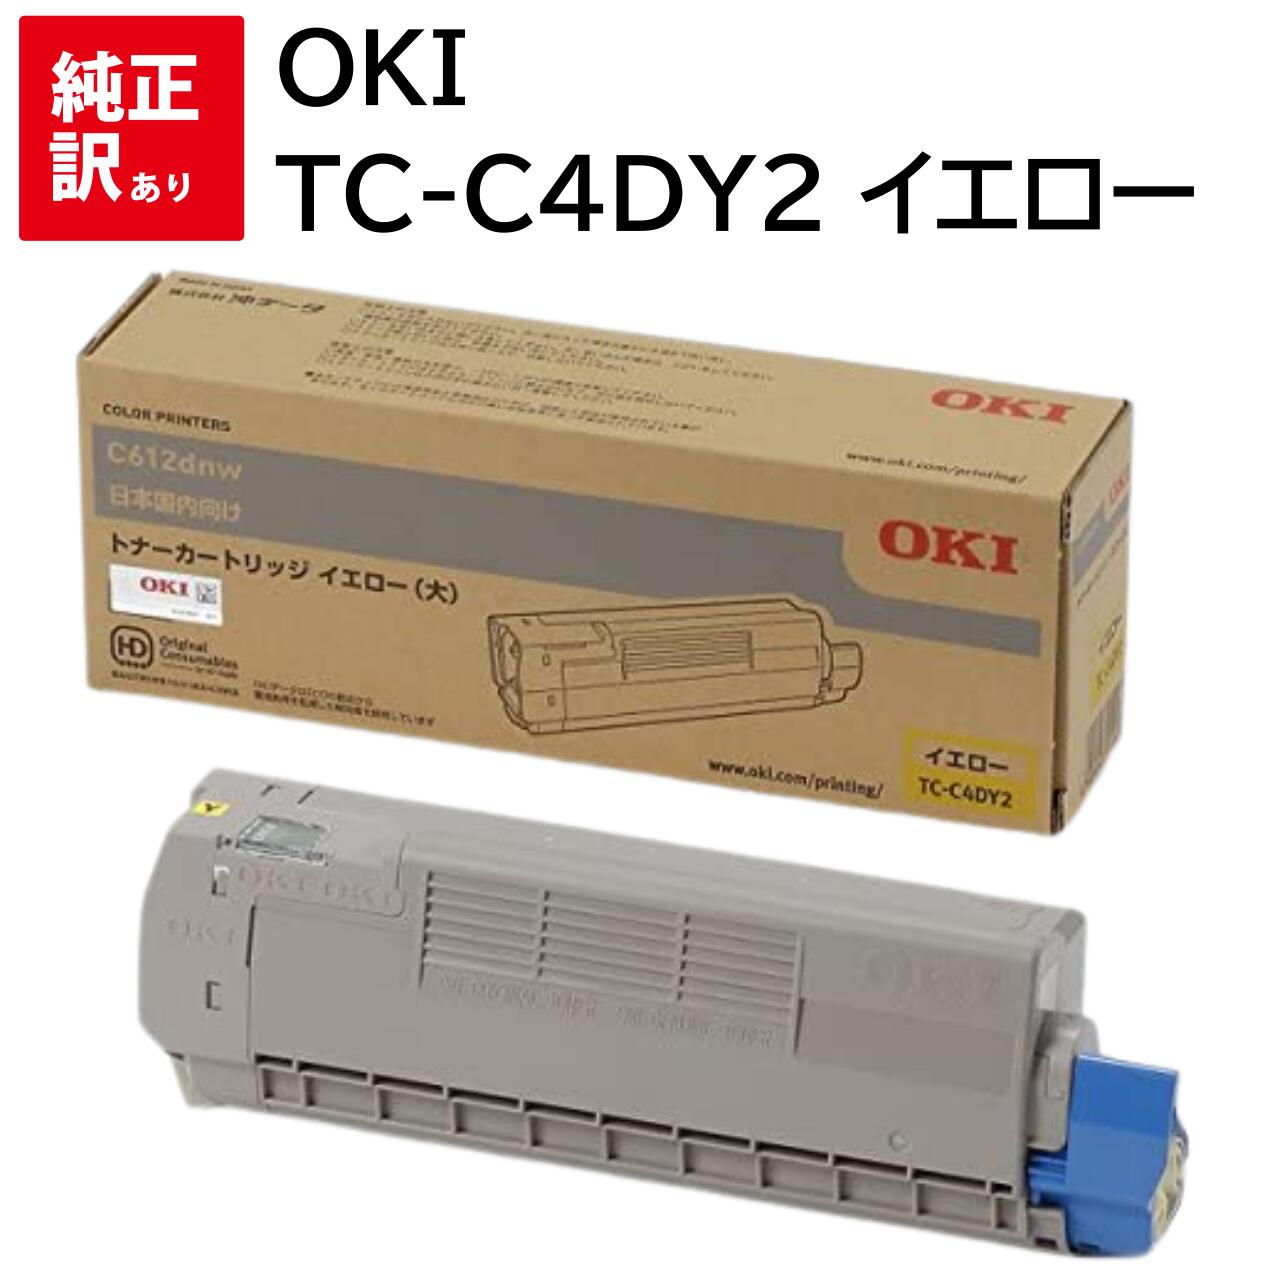 OKIデータ トナーカートリッジ(大) イエロー (C612dnw) TC-C4DY2